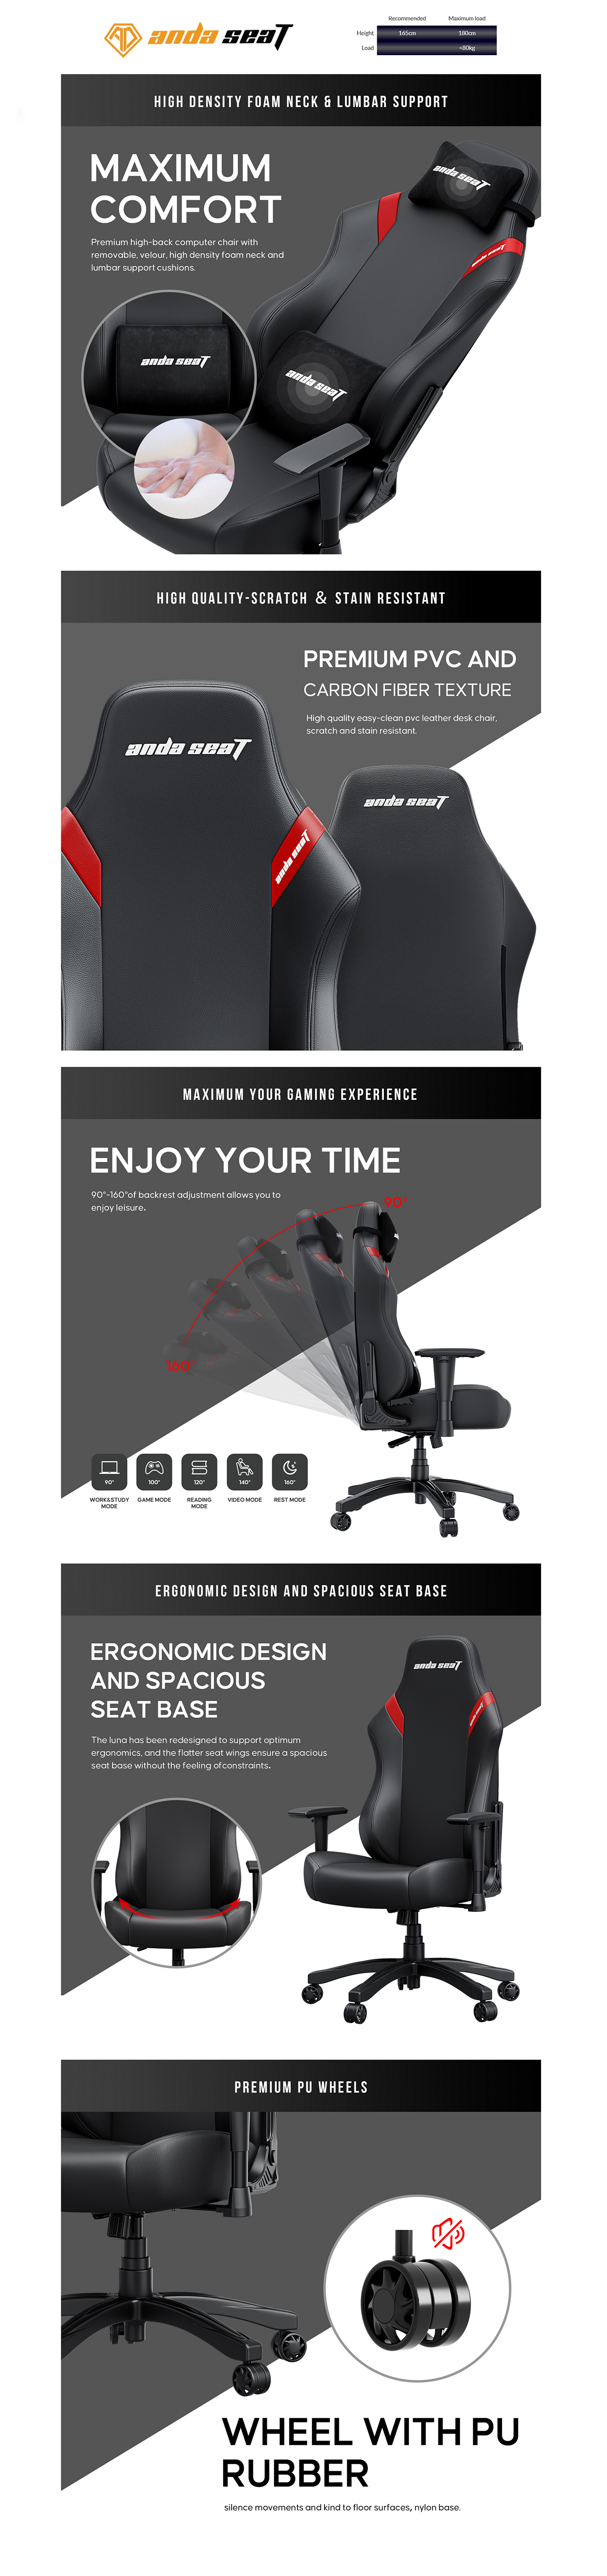 Anda_Seat_Luna_Premium_Gaming_Chair_envisimple_2.jpg